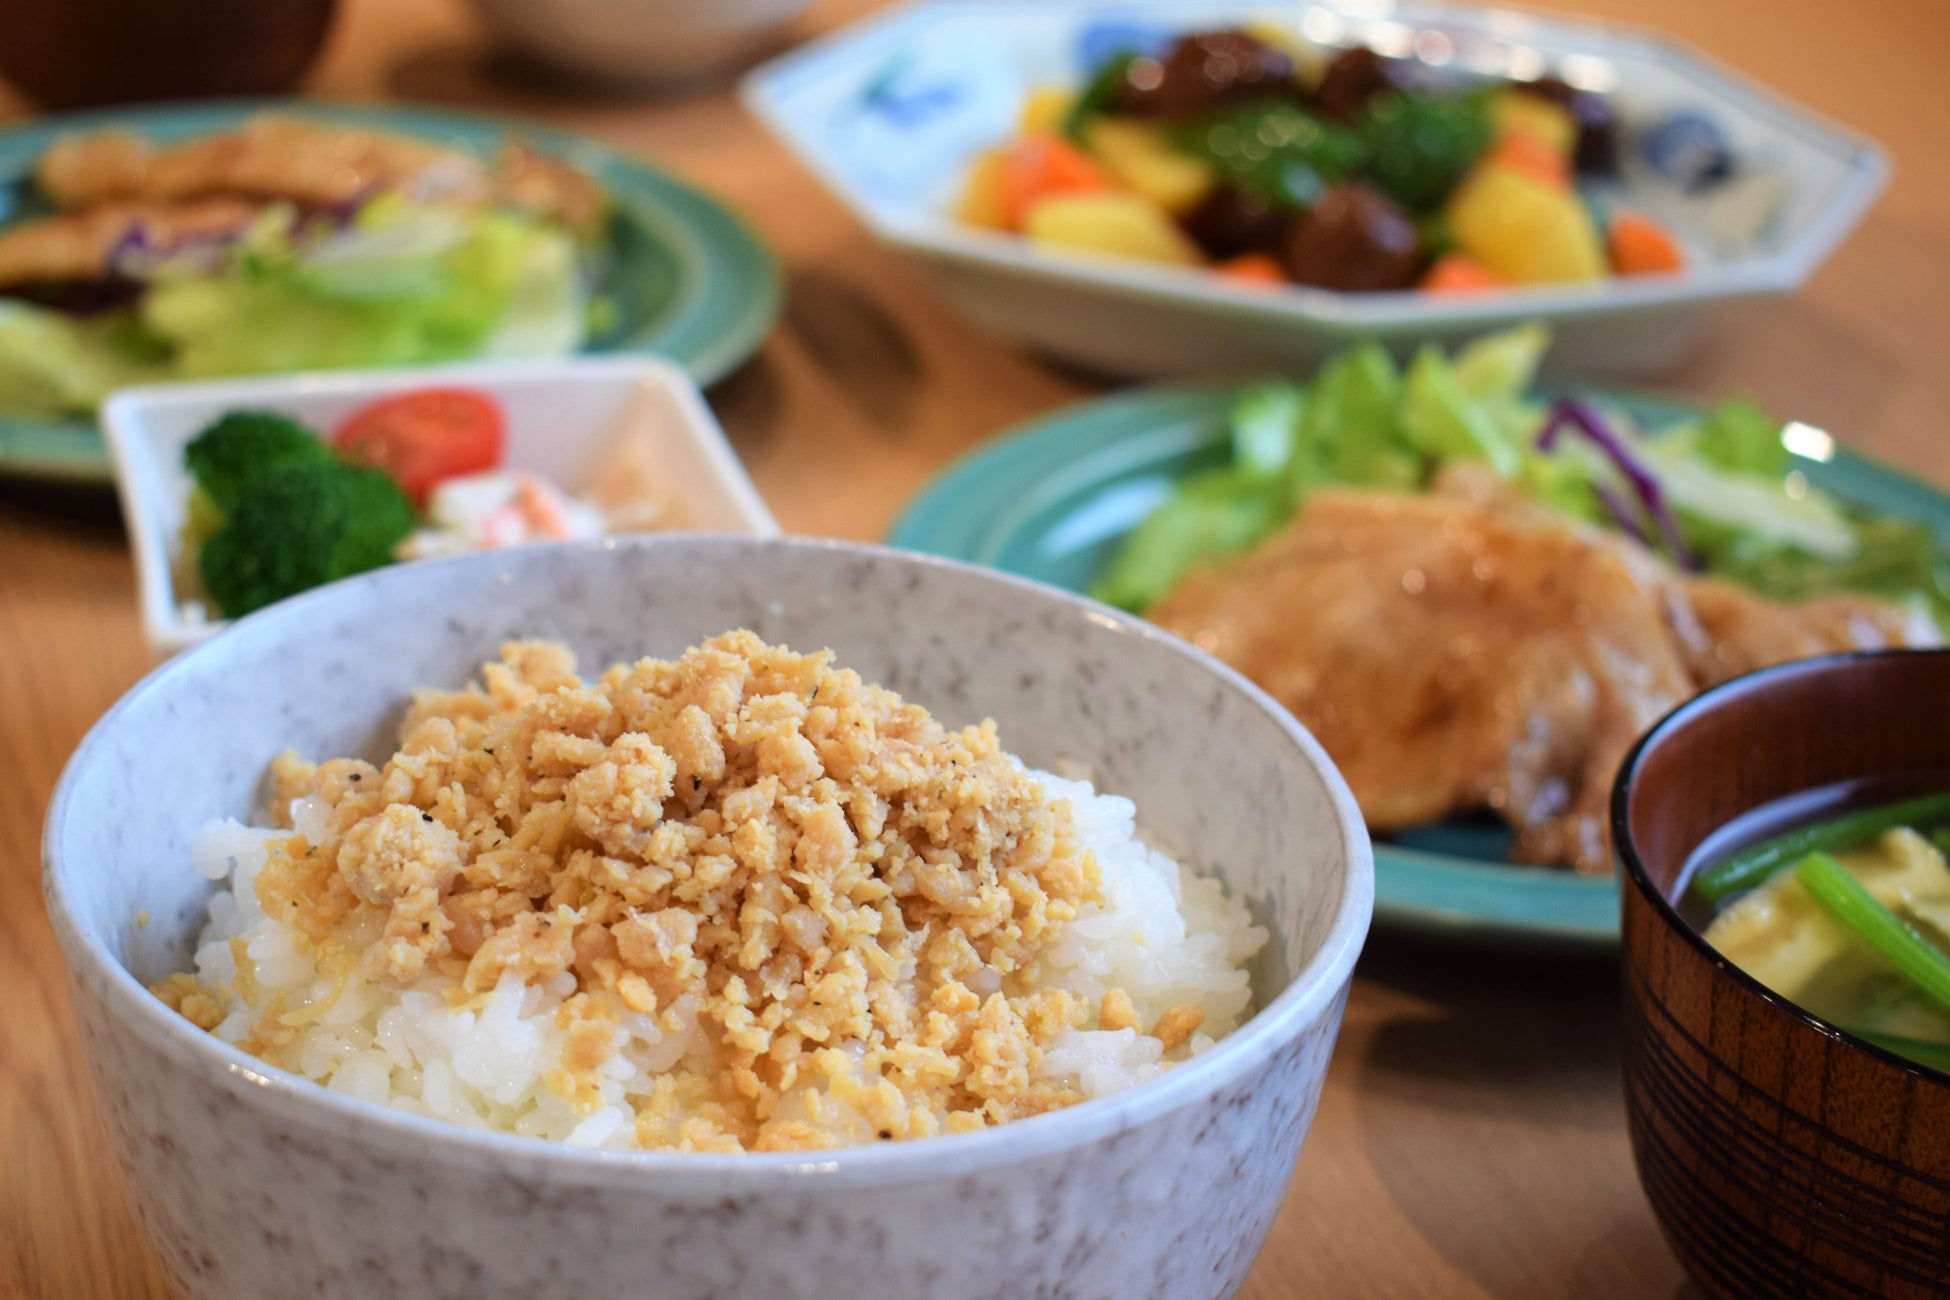 【話題レポ】新大久保に韓国で人気の「進化系いなり寿司」が食べられる『駅前酒場』がオープン